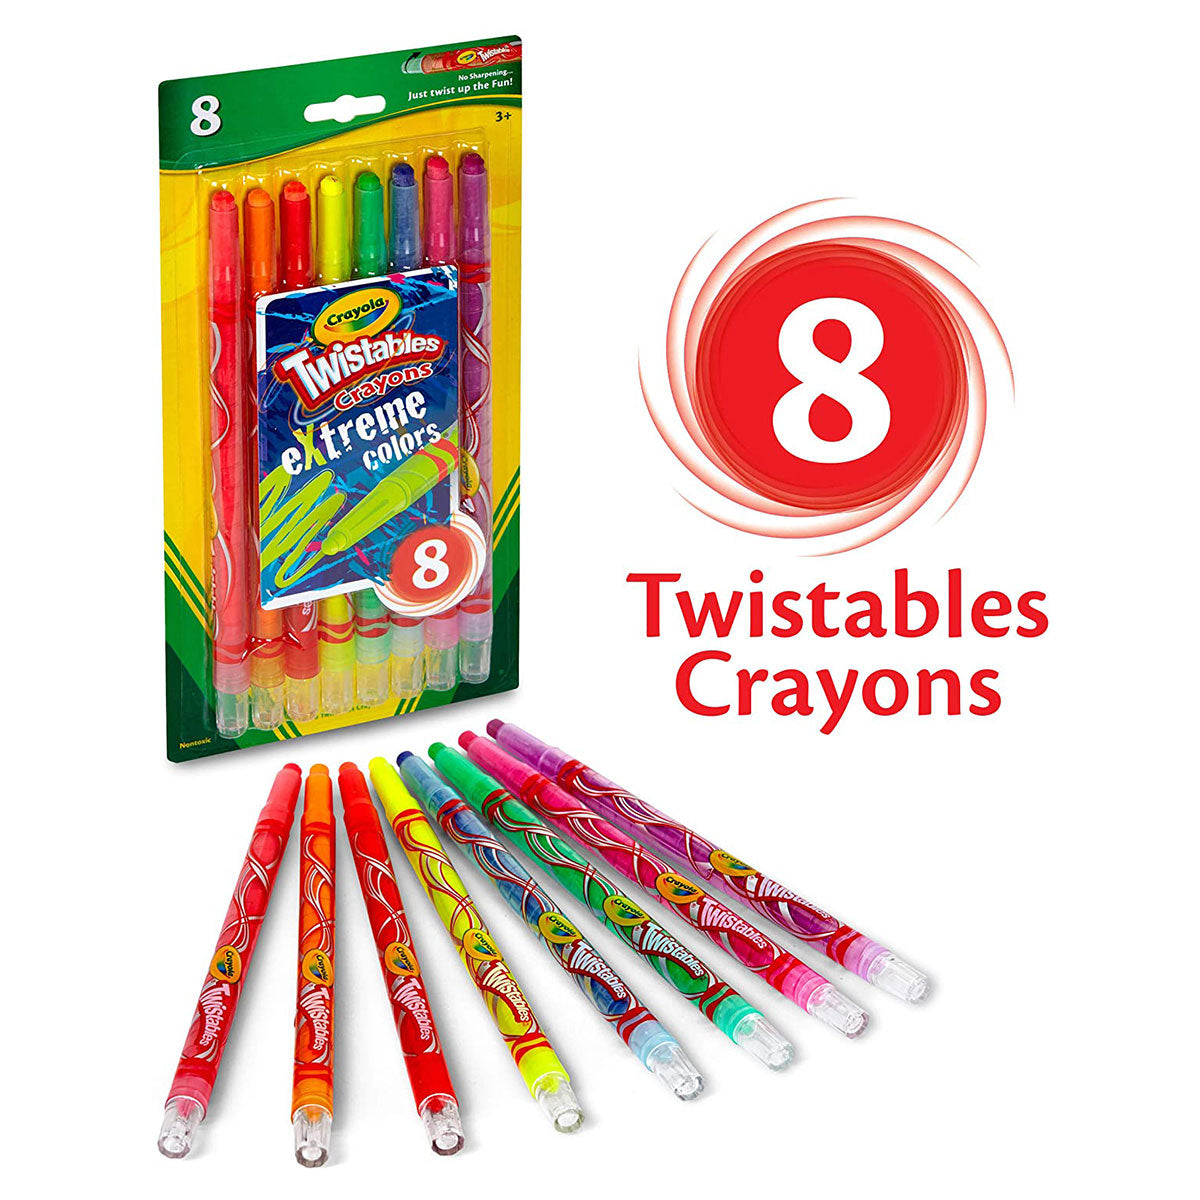 Crayola Neon Crayons, 8 Count